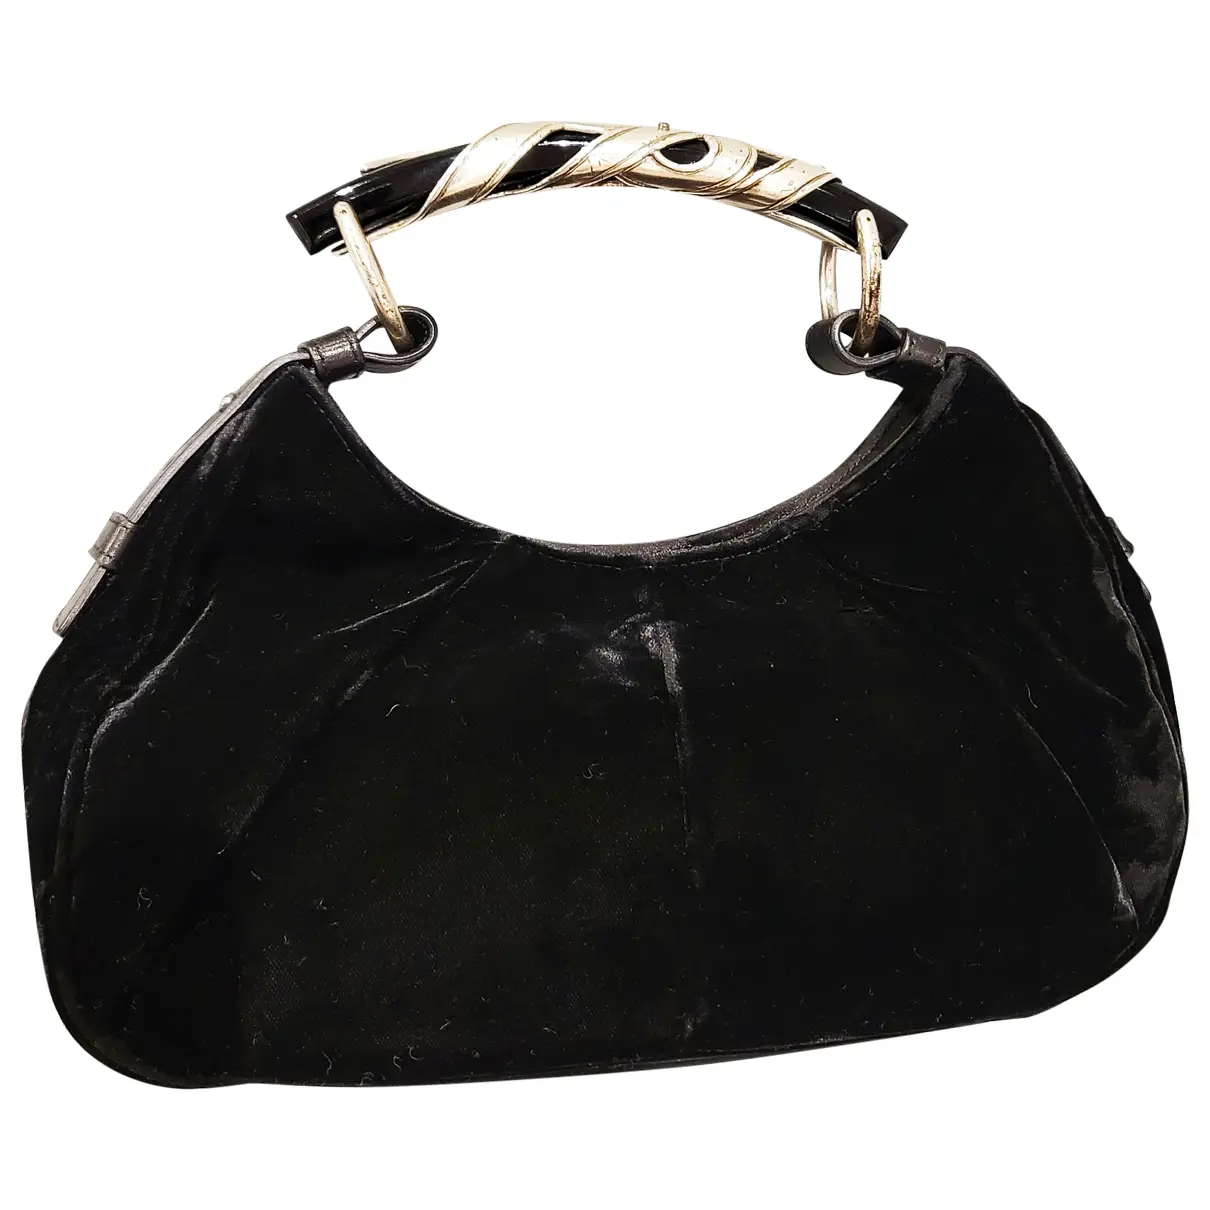 Mombasa velvet handbag Yves Saint Laurent